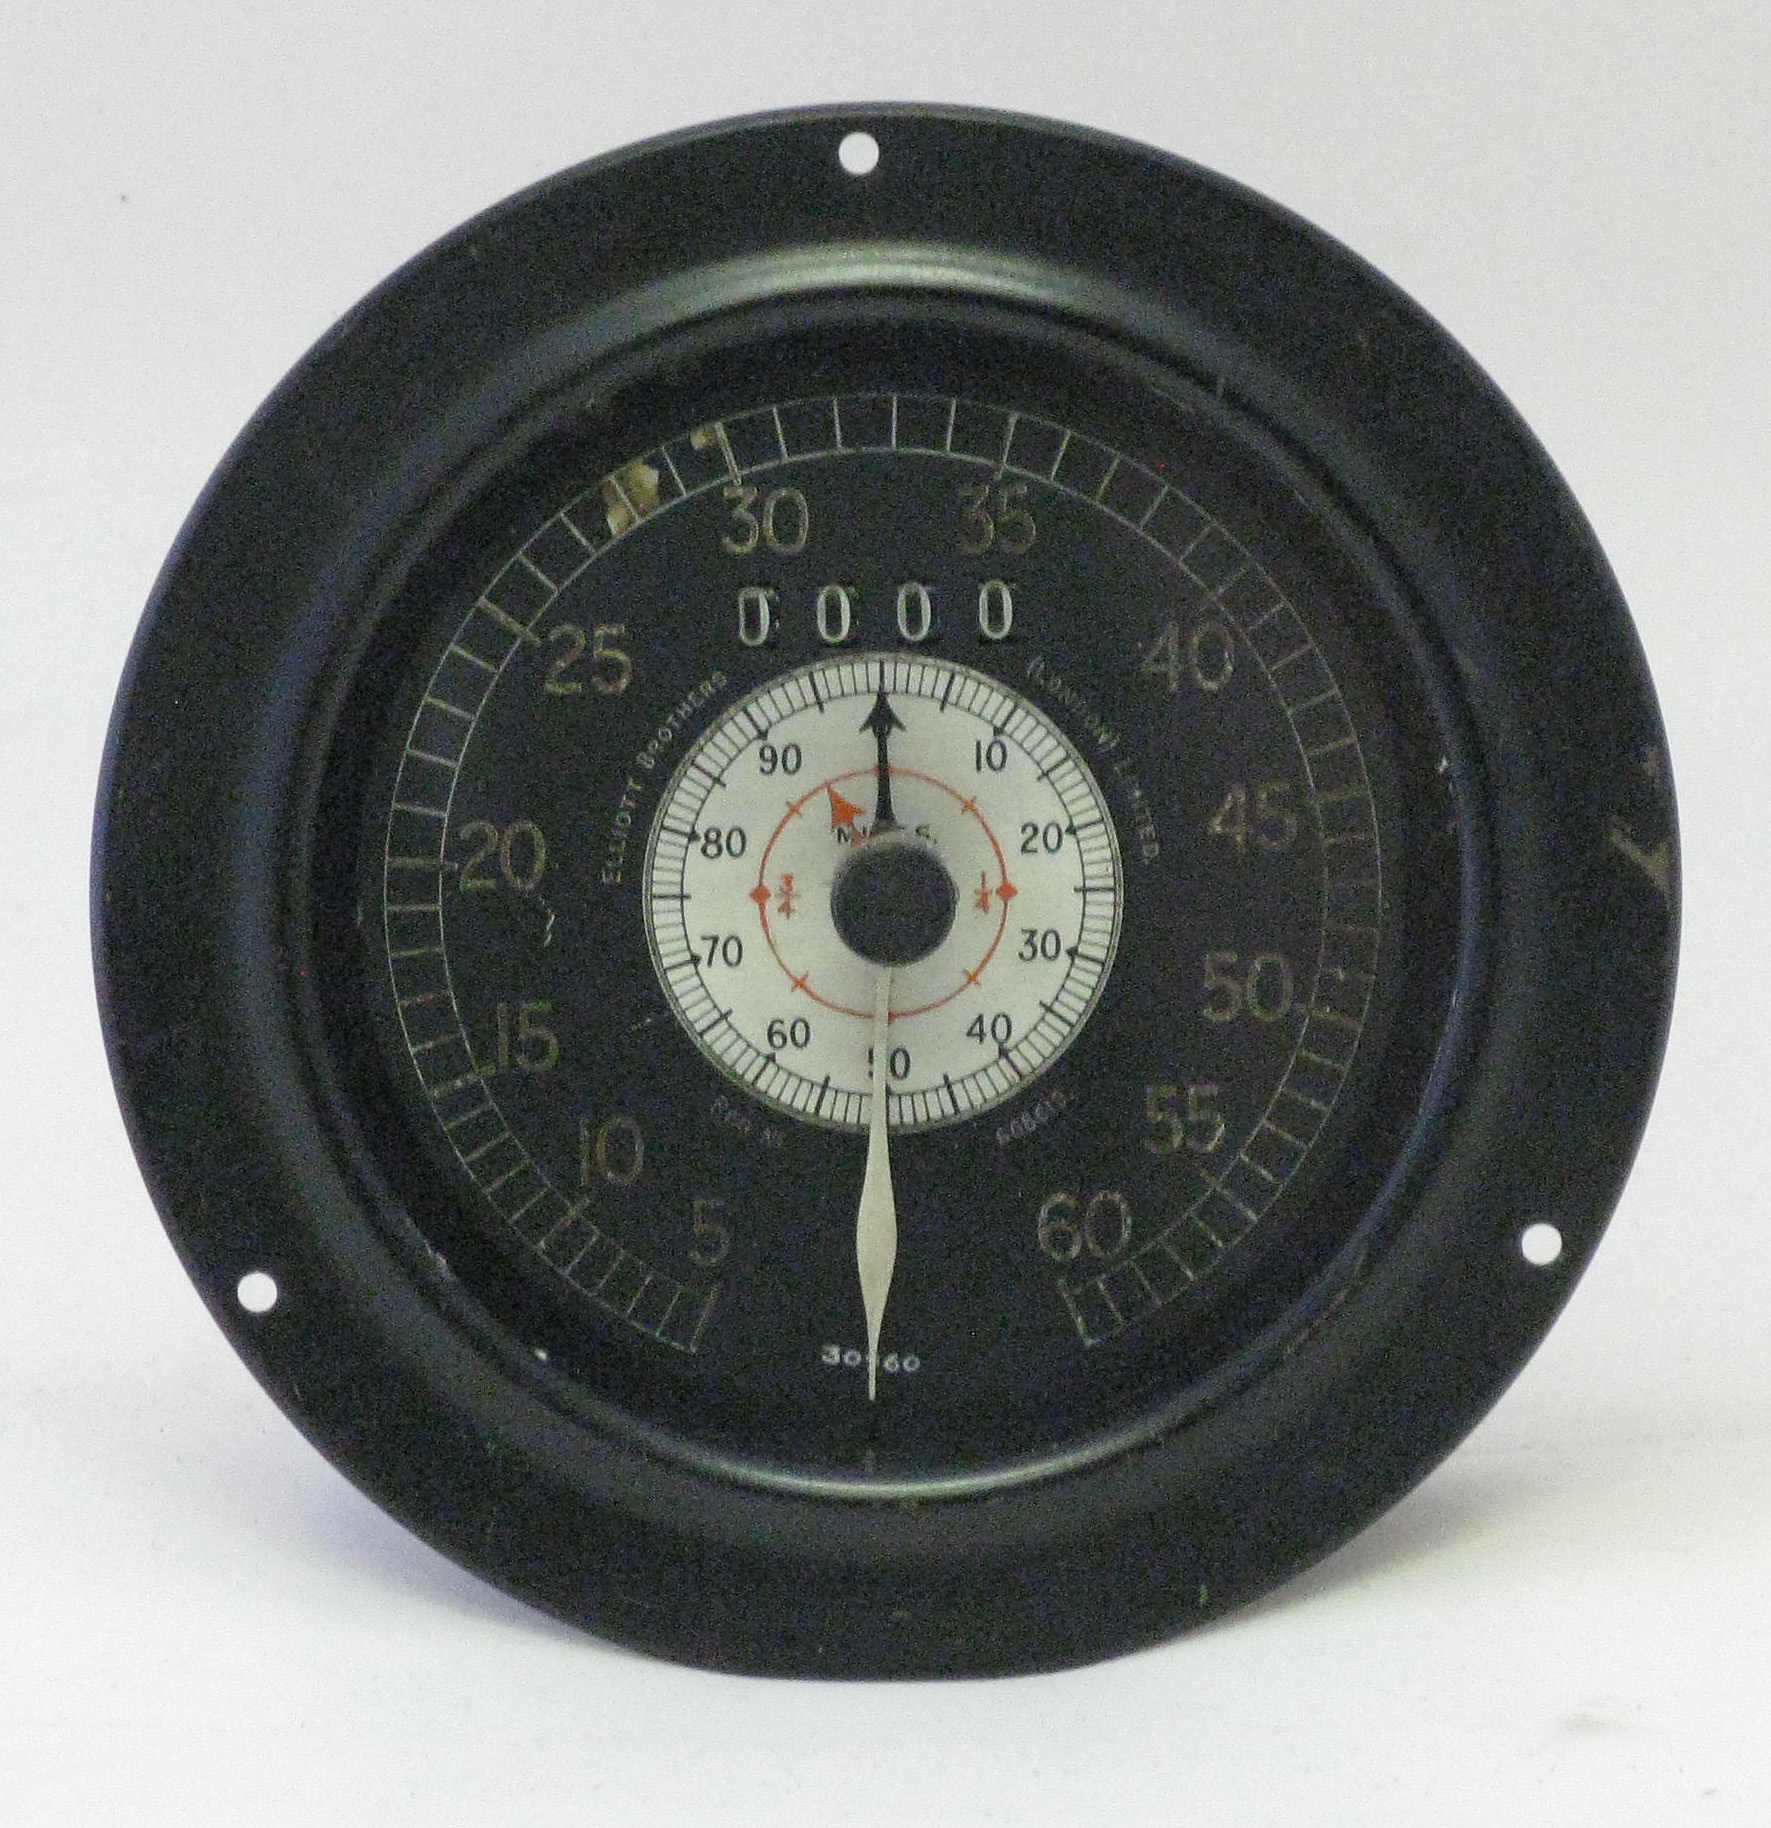 Speedometer 0-60